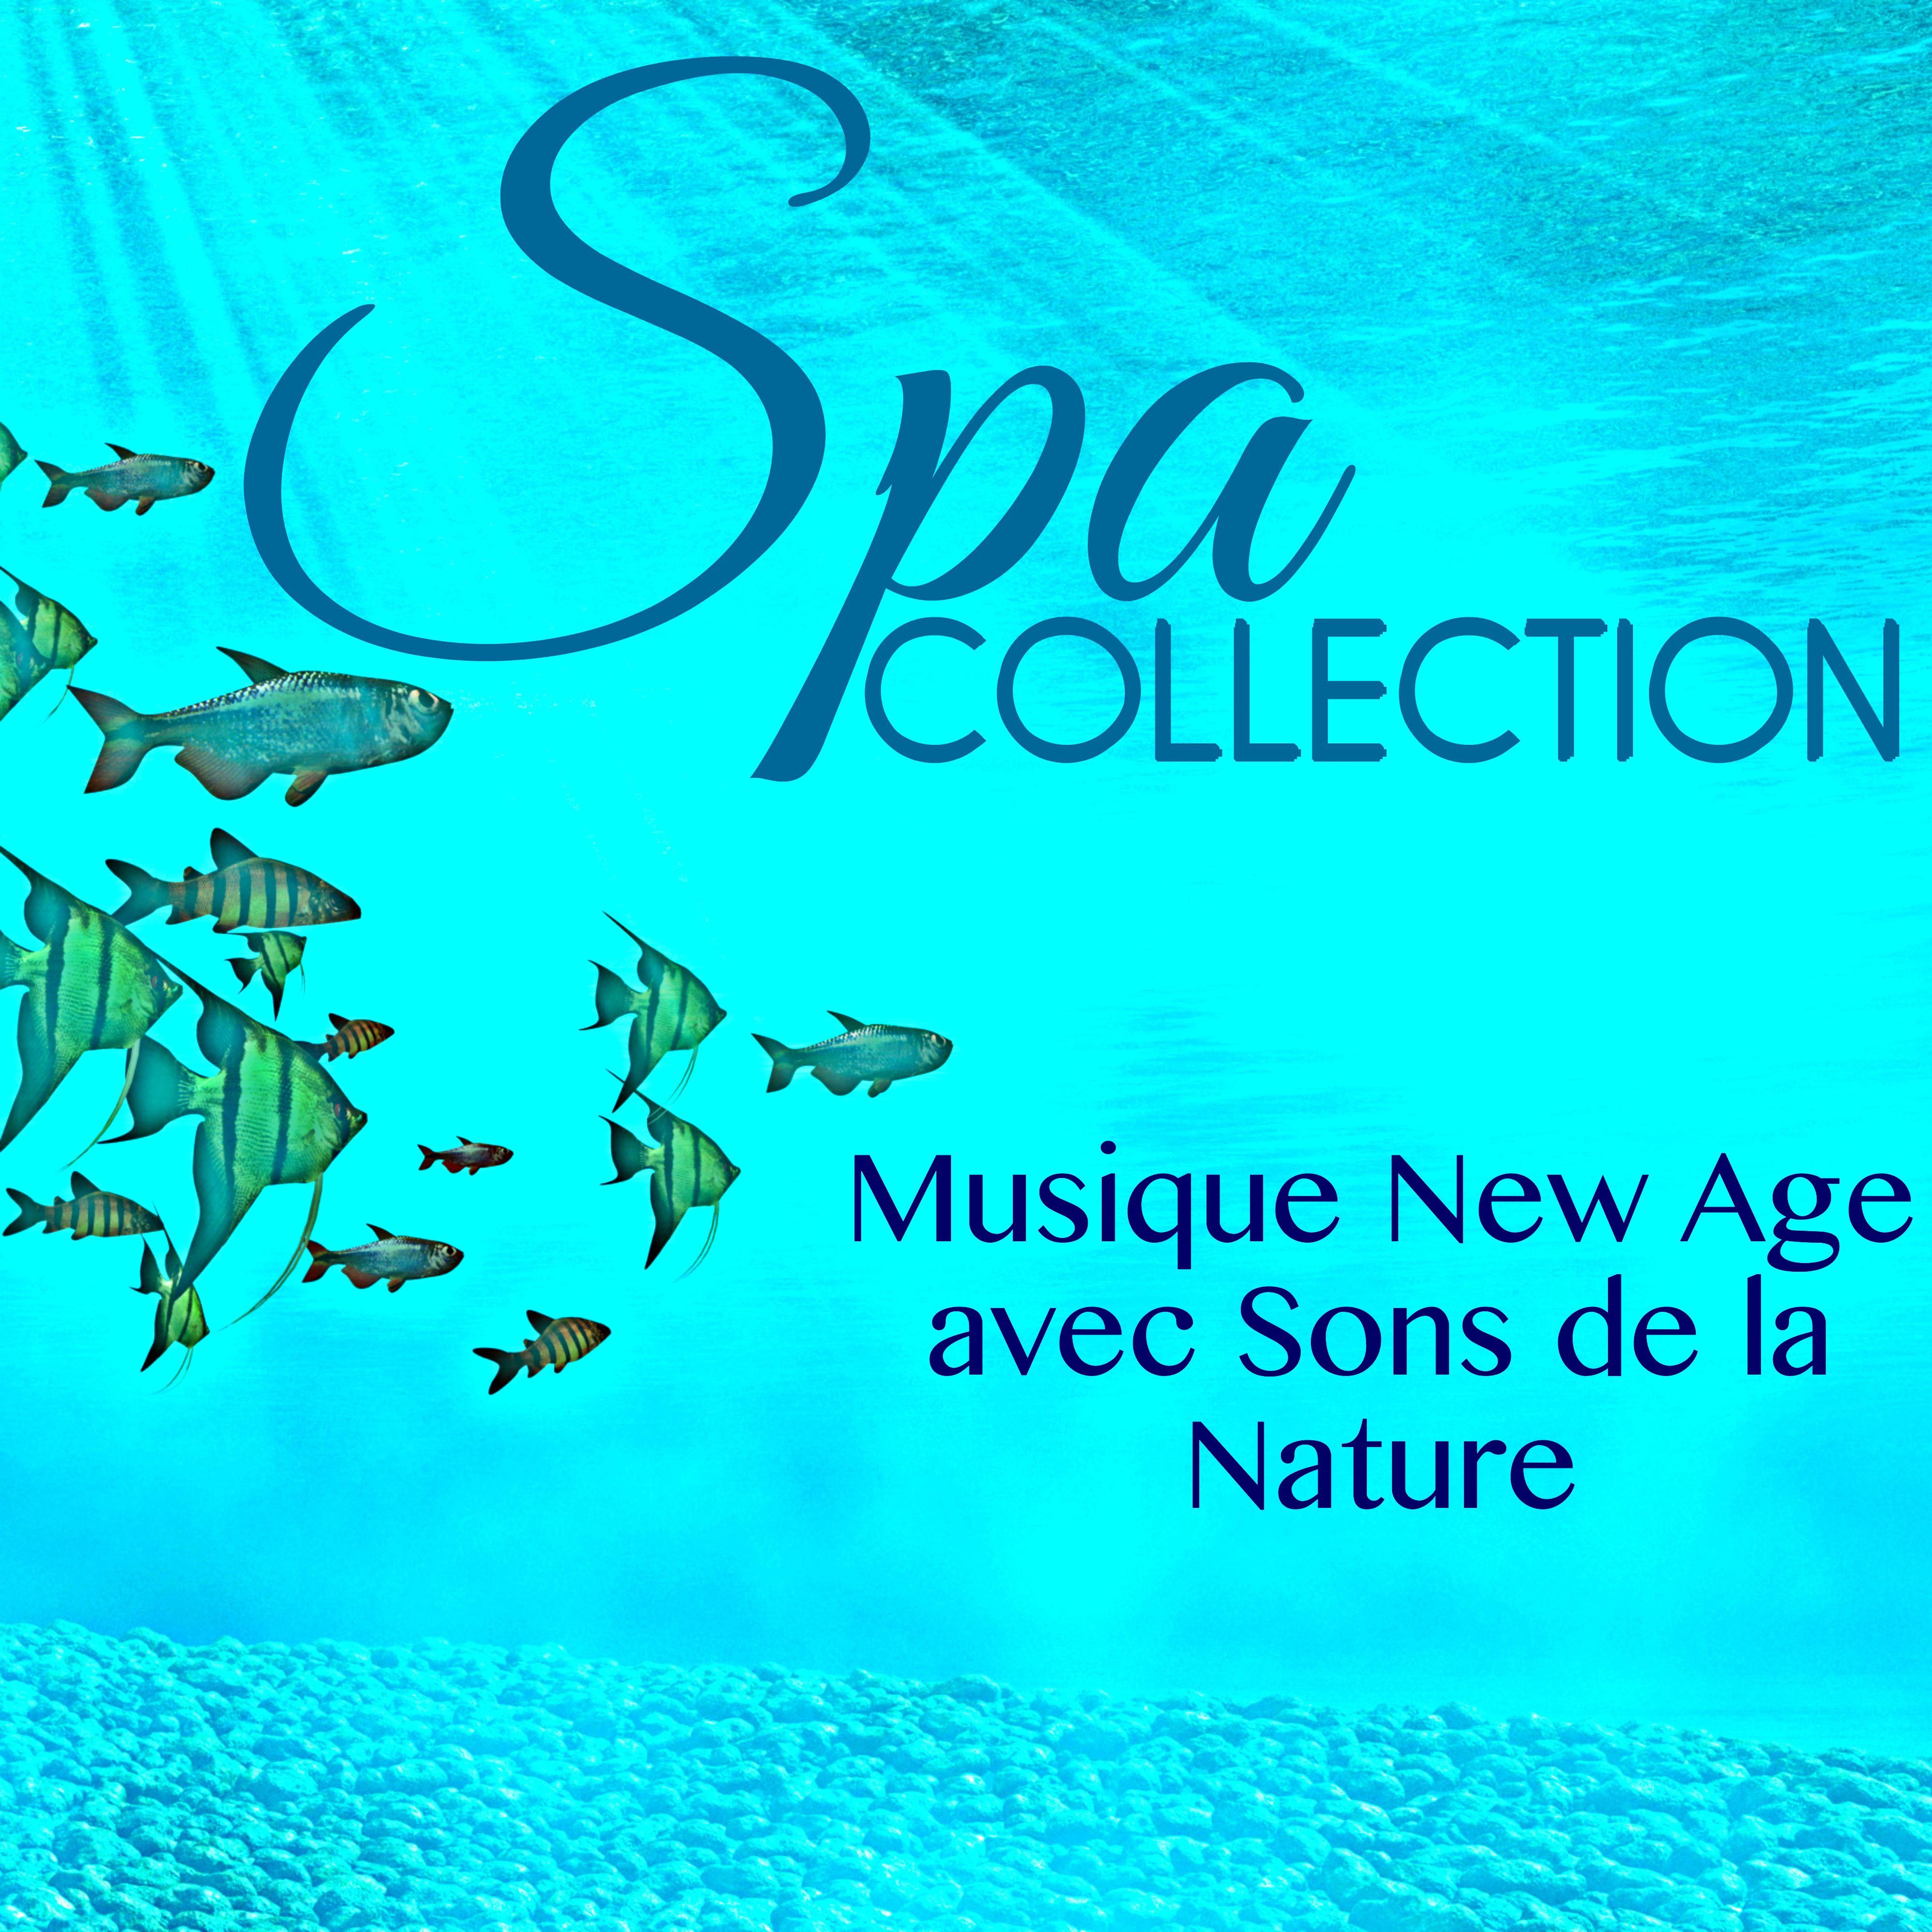 Spa Collection  Musique New Age avec Sons de la Nature  Merveilleux Chansons de Chill Out pour Massage, Bien tre, Relaxation É nergie Positive, Collection de Me ditation Spa